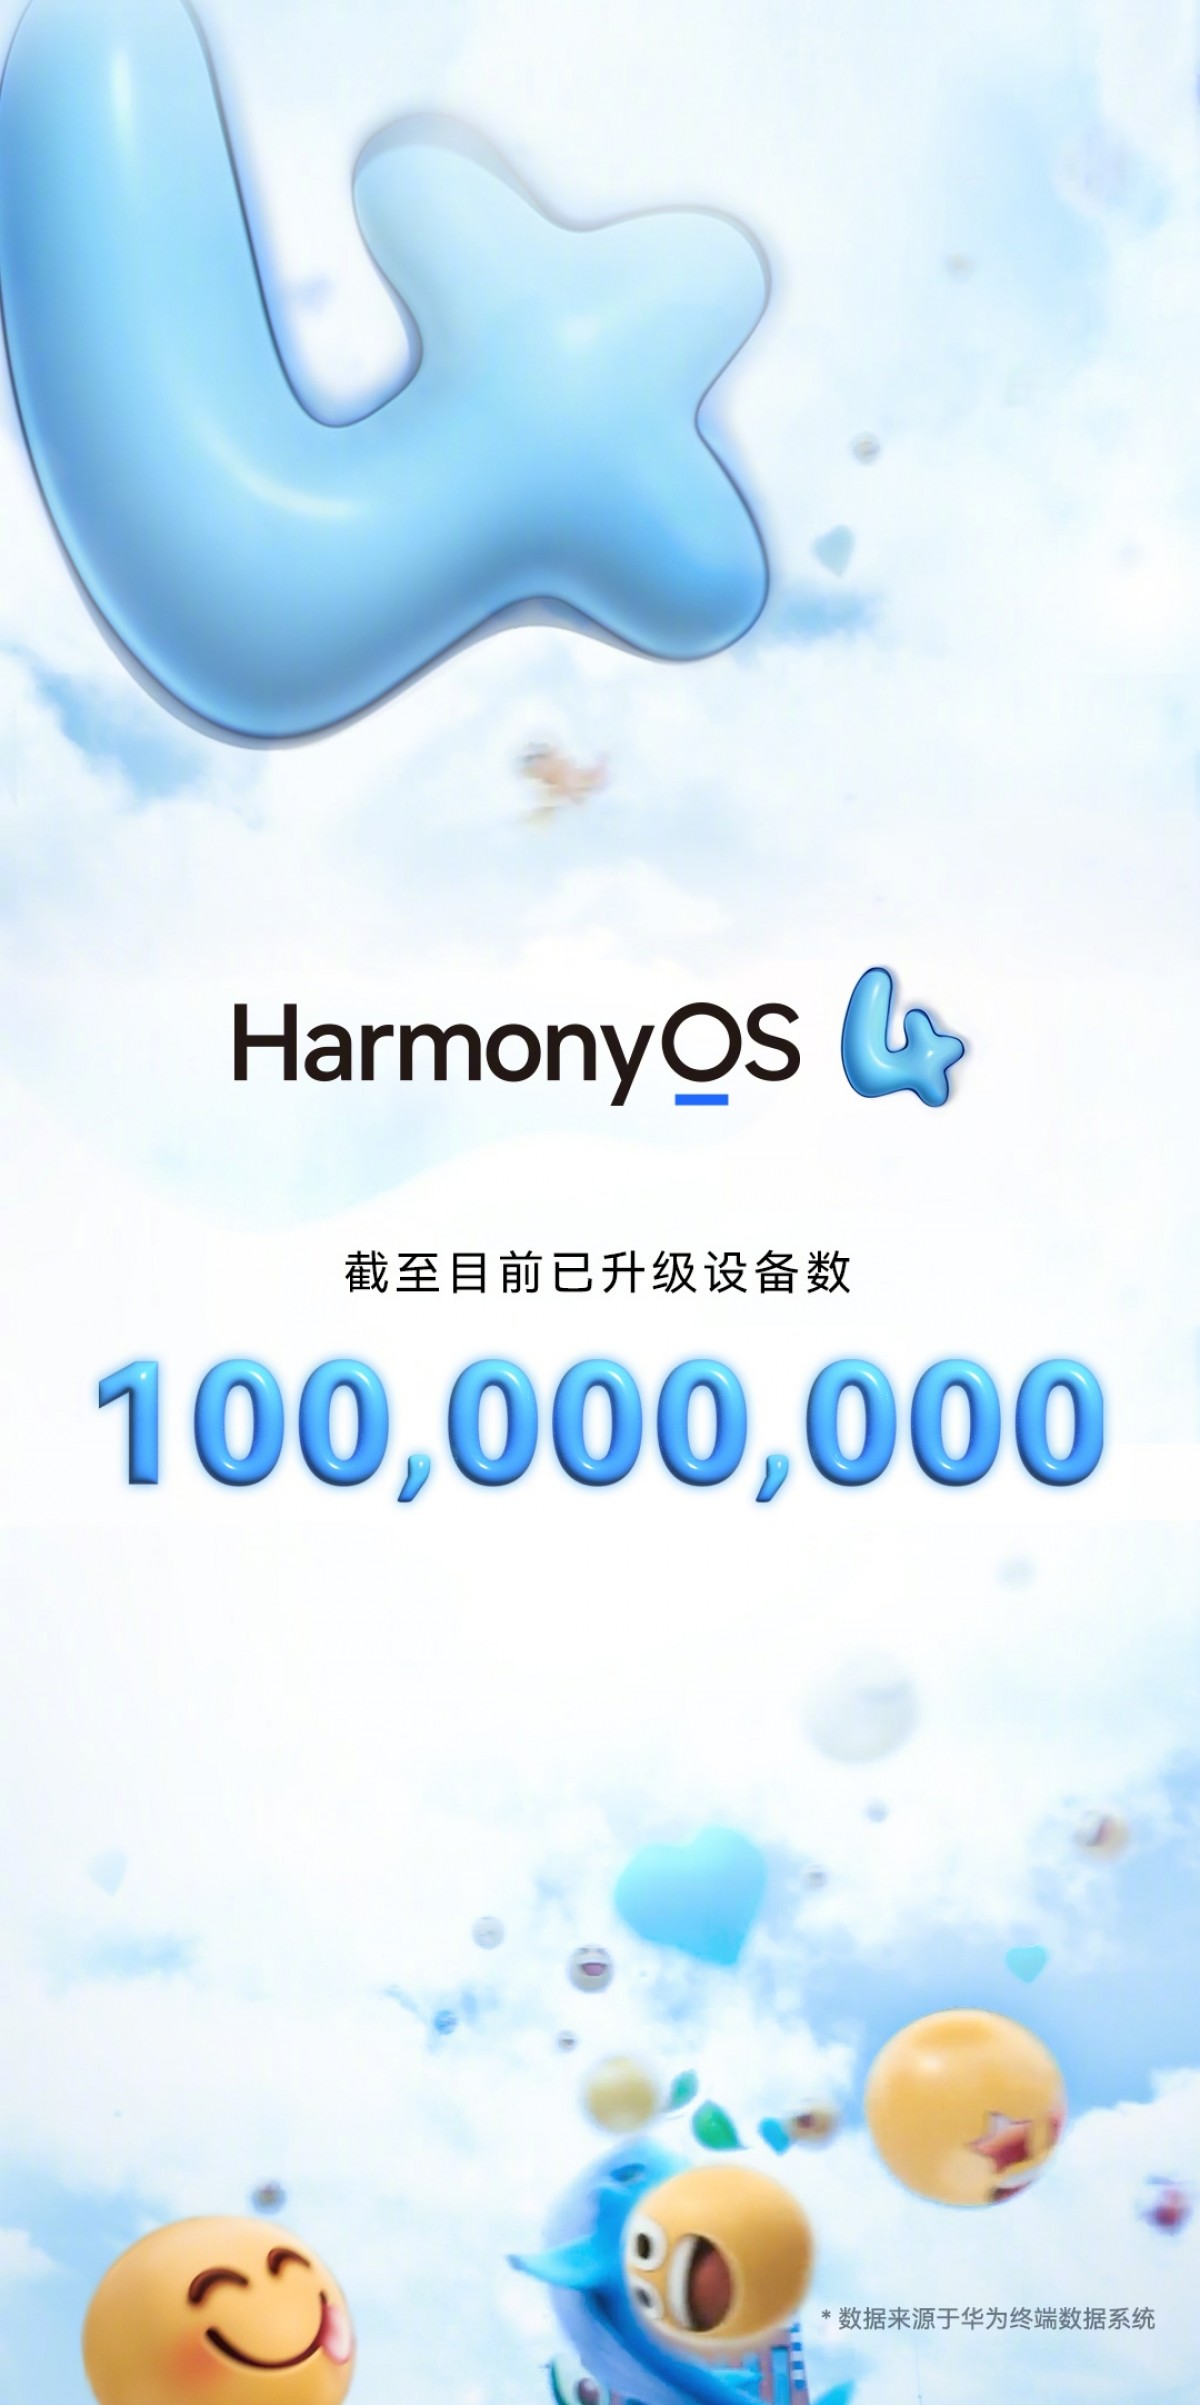 Huawei celebrates 100 million devices with HarmonyOS 4